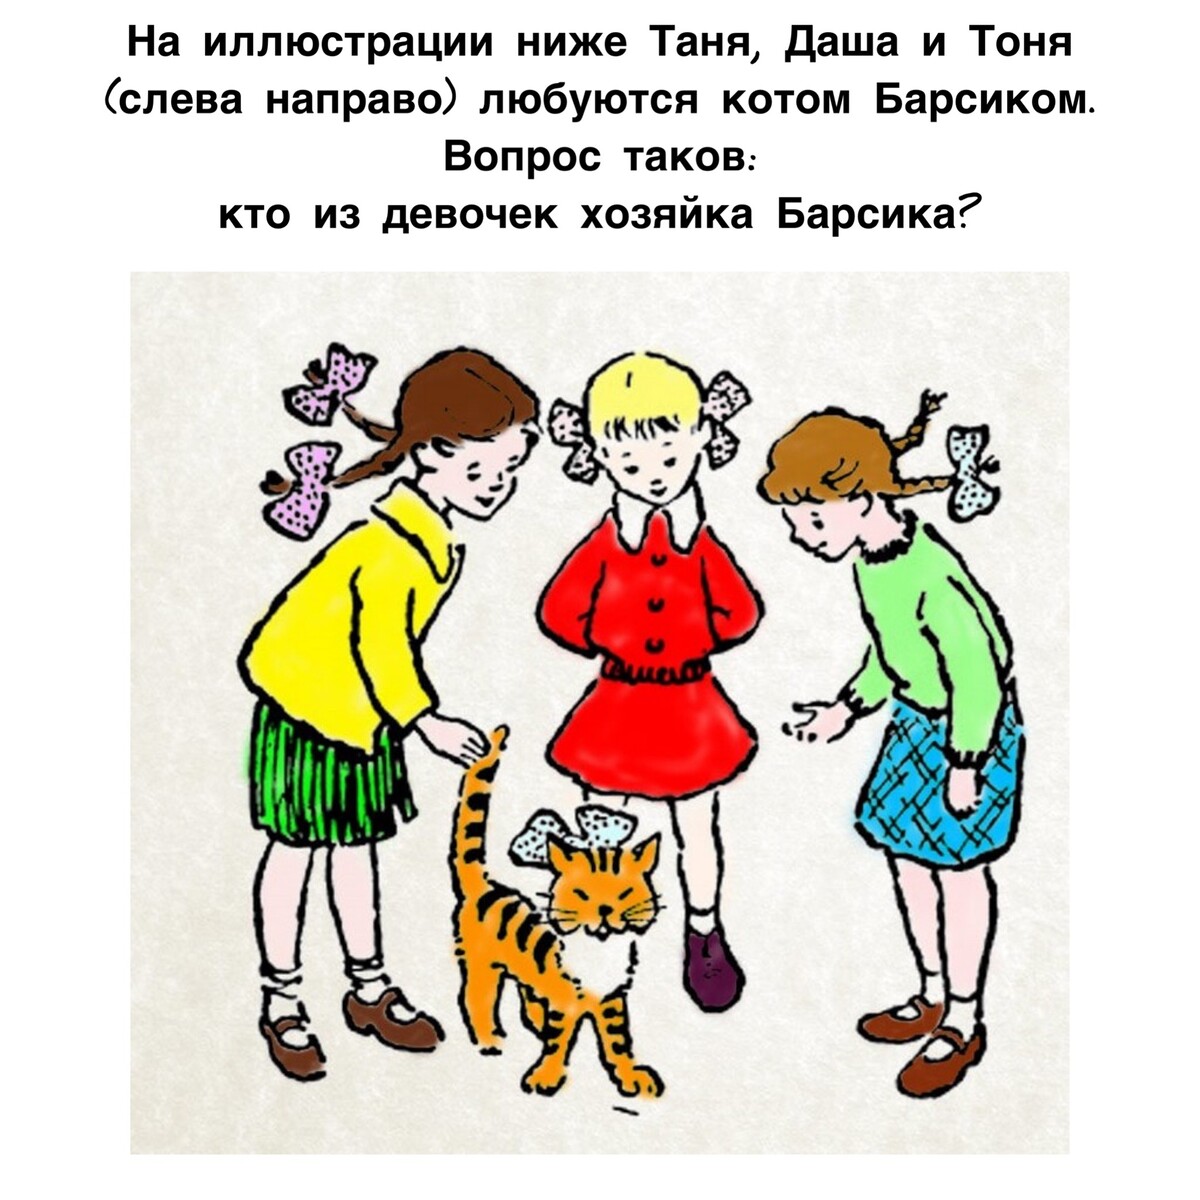 Таня хозяйка кота мурзика. Загадка три девочки и кот кто хозяйка. Какая из трех девочек — хозяйка кота?.